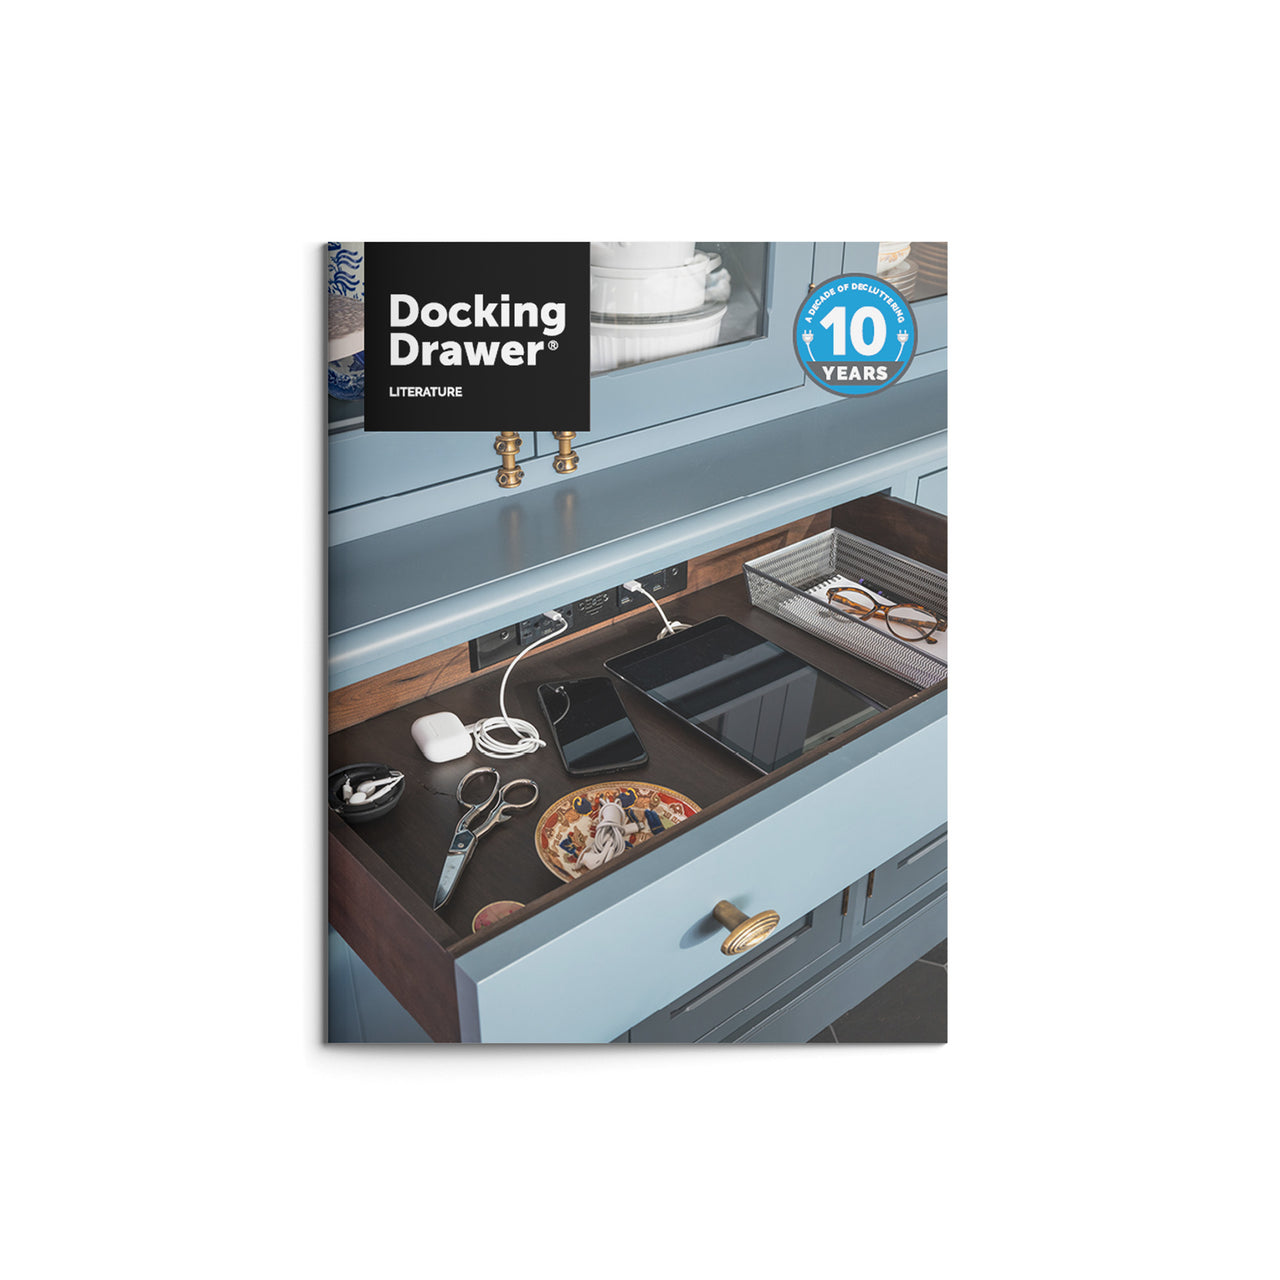 Docking Drawer Literature Kit